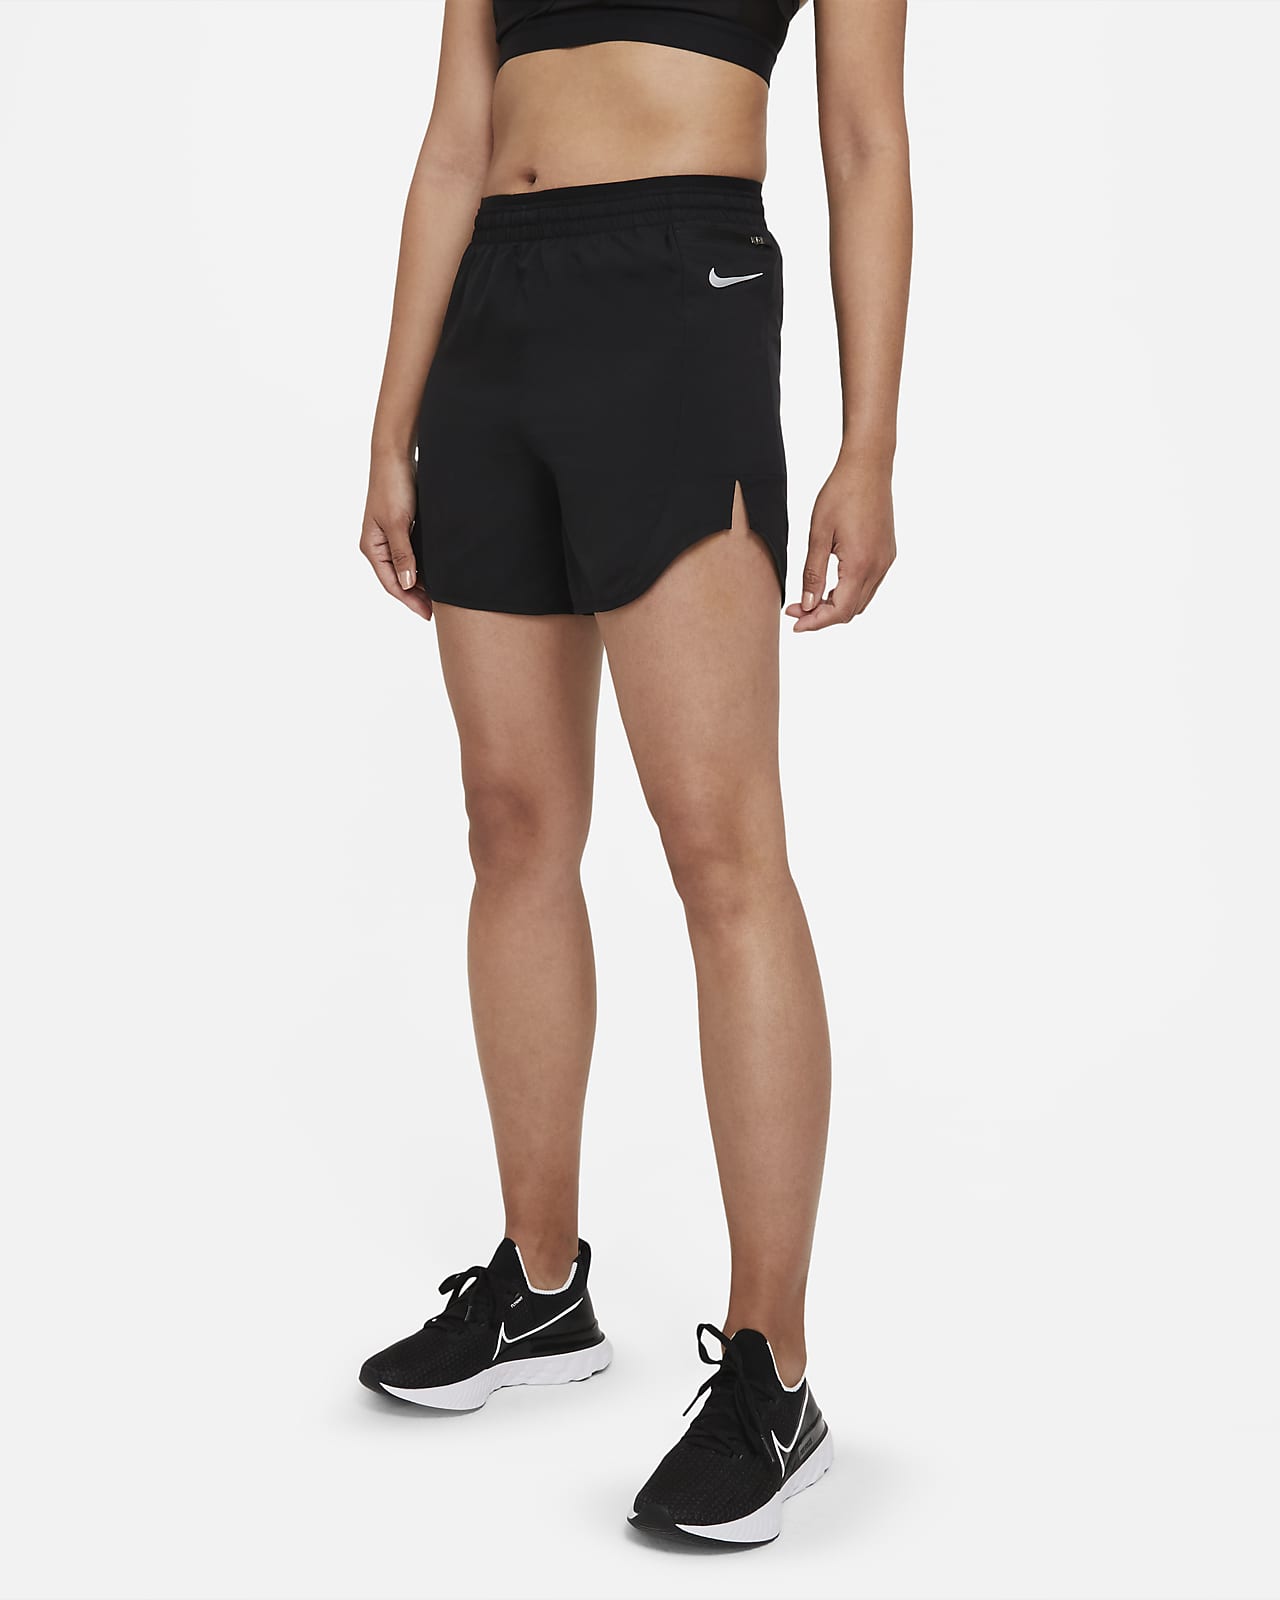 women's running shorts nike tempo